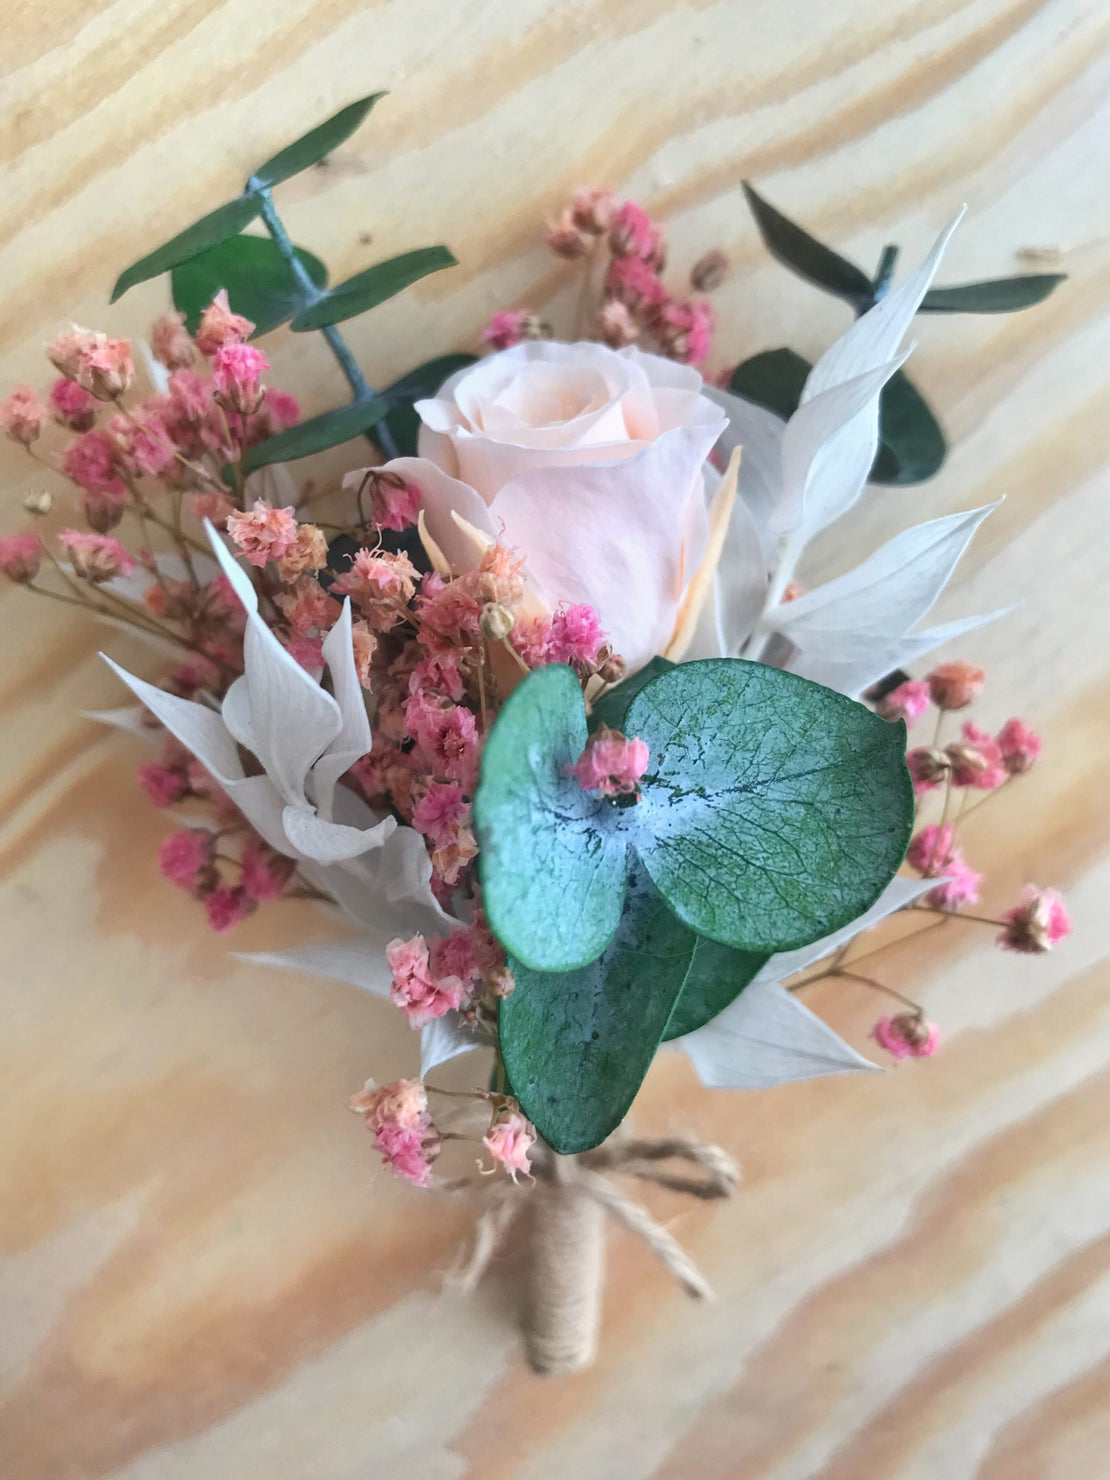 Boutonnière de mariage fleurs séchées avec rose eternelle, gypsophile rose et eucalyptus stabilisée